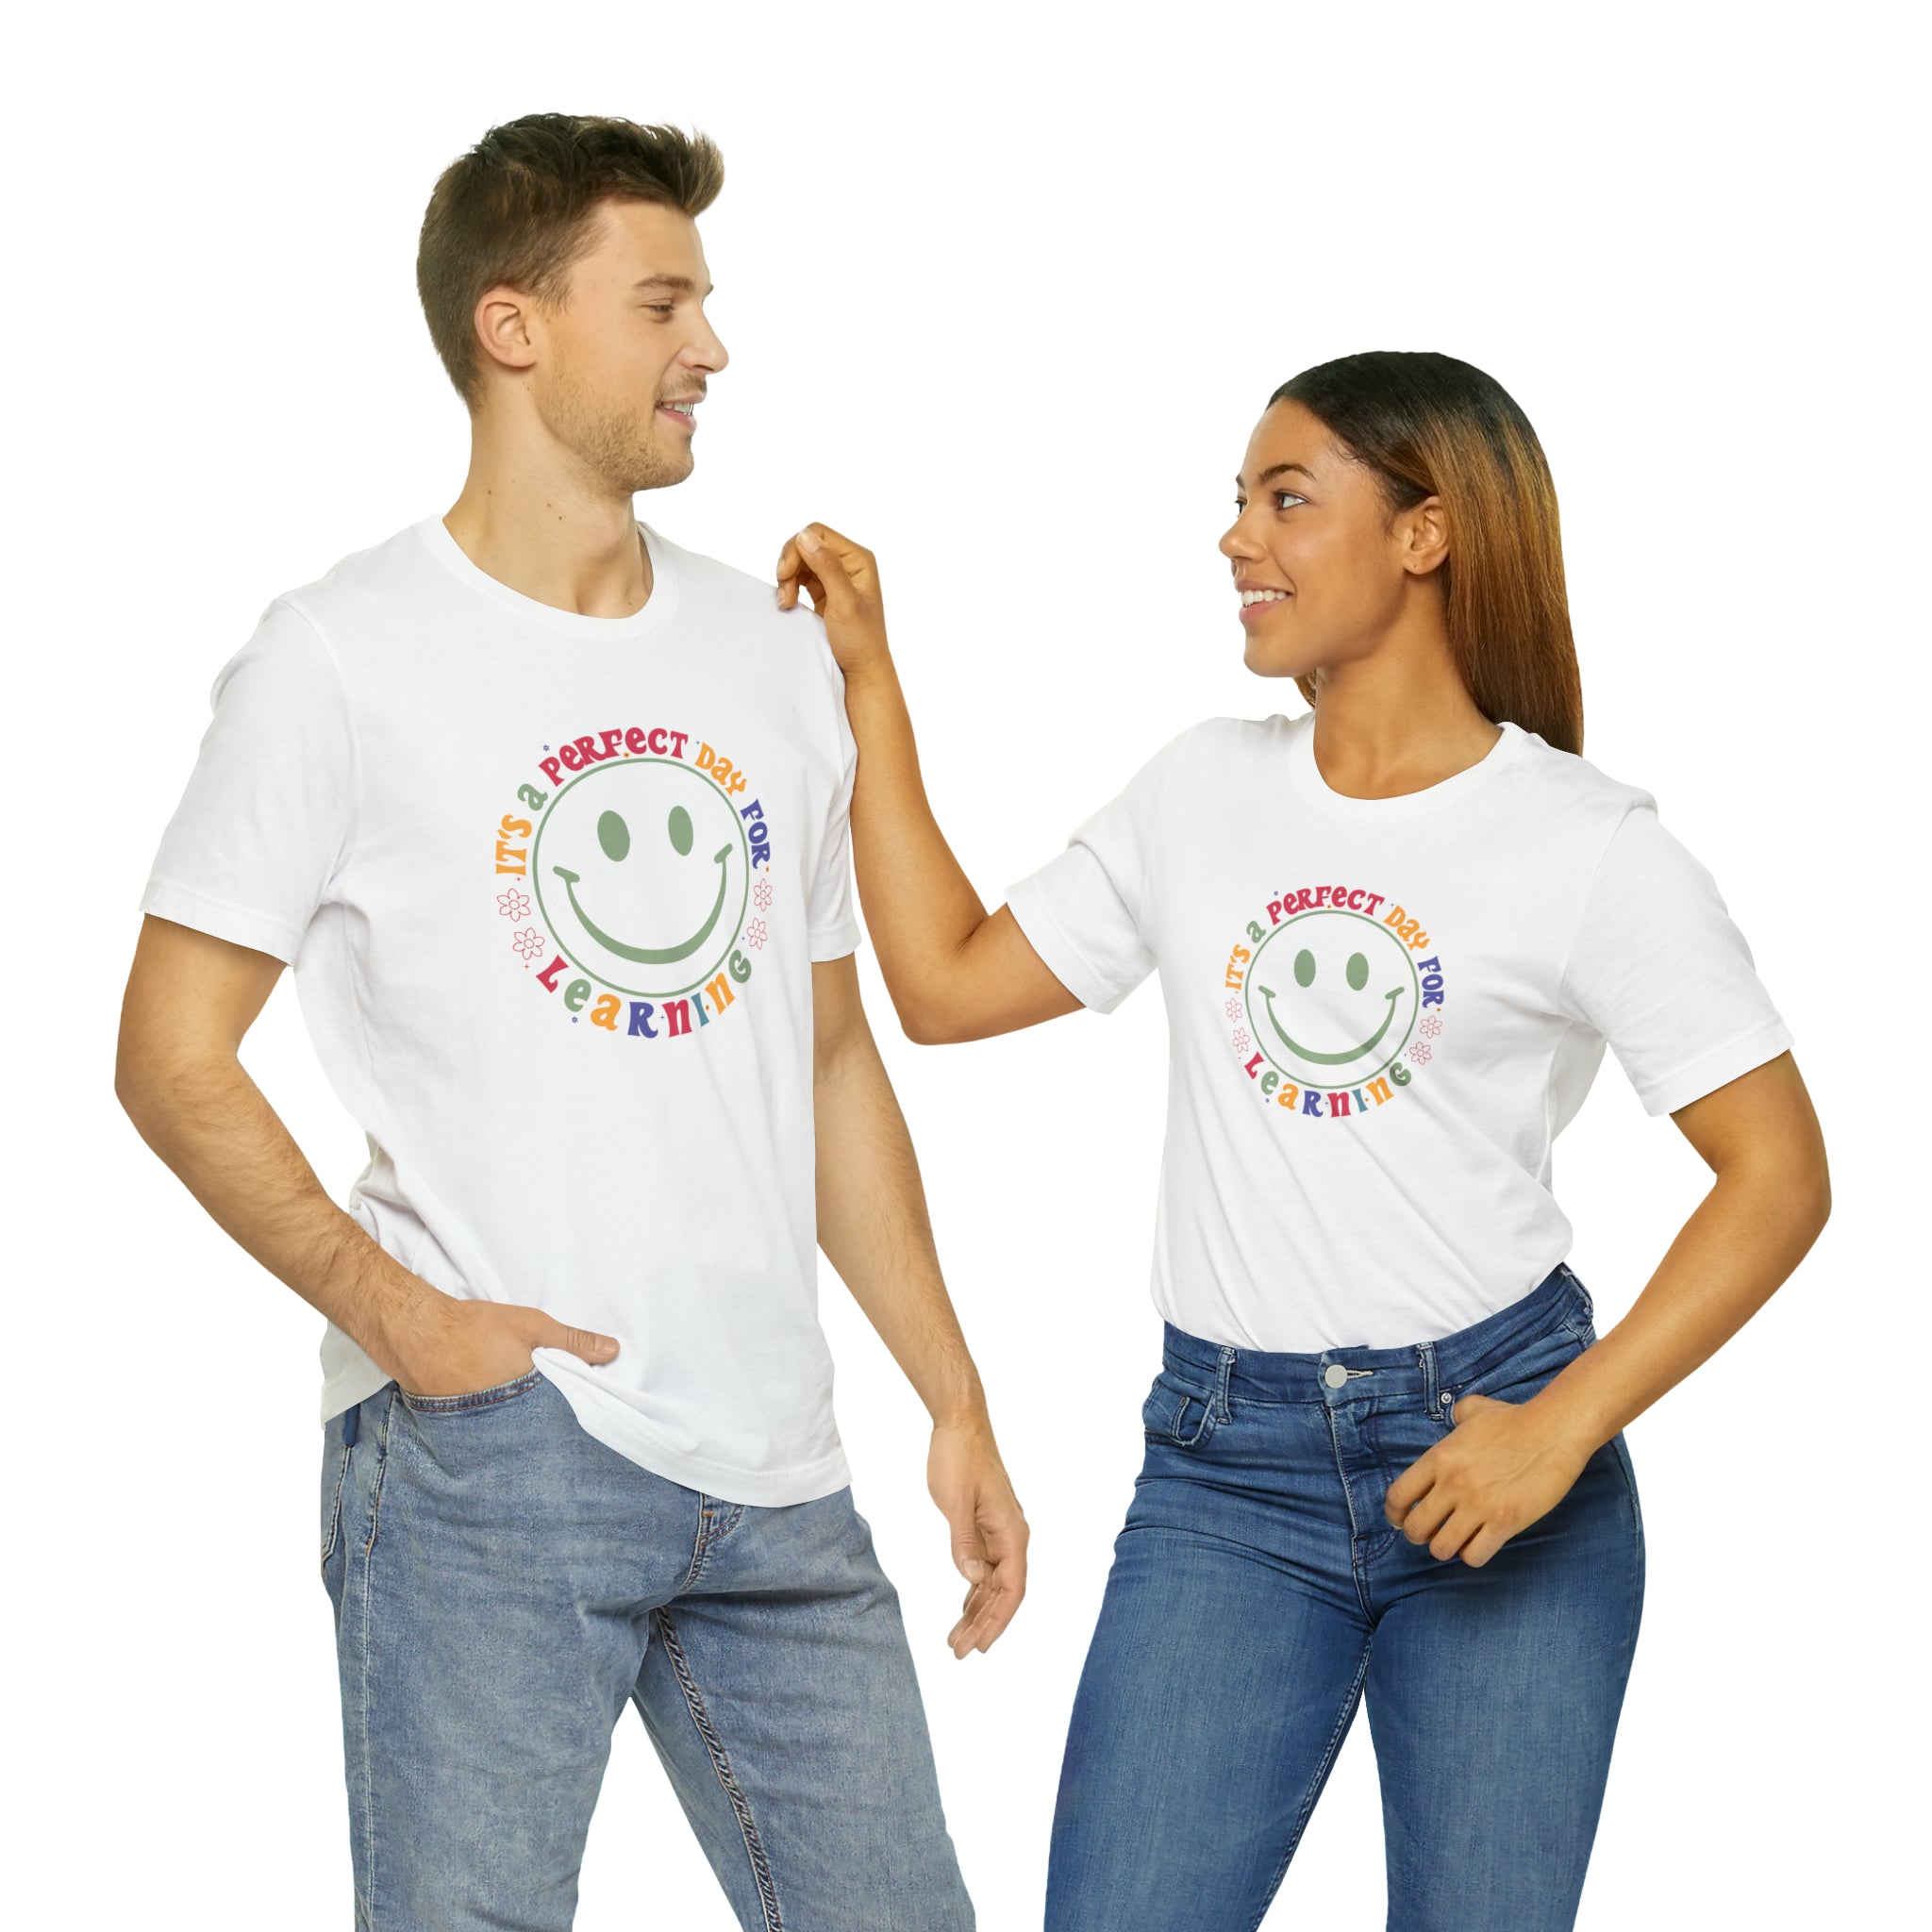 Teacher Shirt Perfect Day For Learning Teacher Life Shirt Smiley Face Teacher Motivational Shirt Gift For Teacher Teacher Inspirational Tee